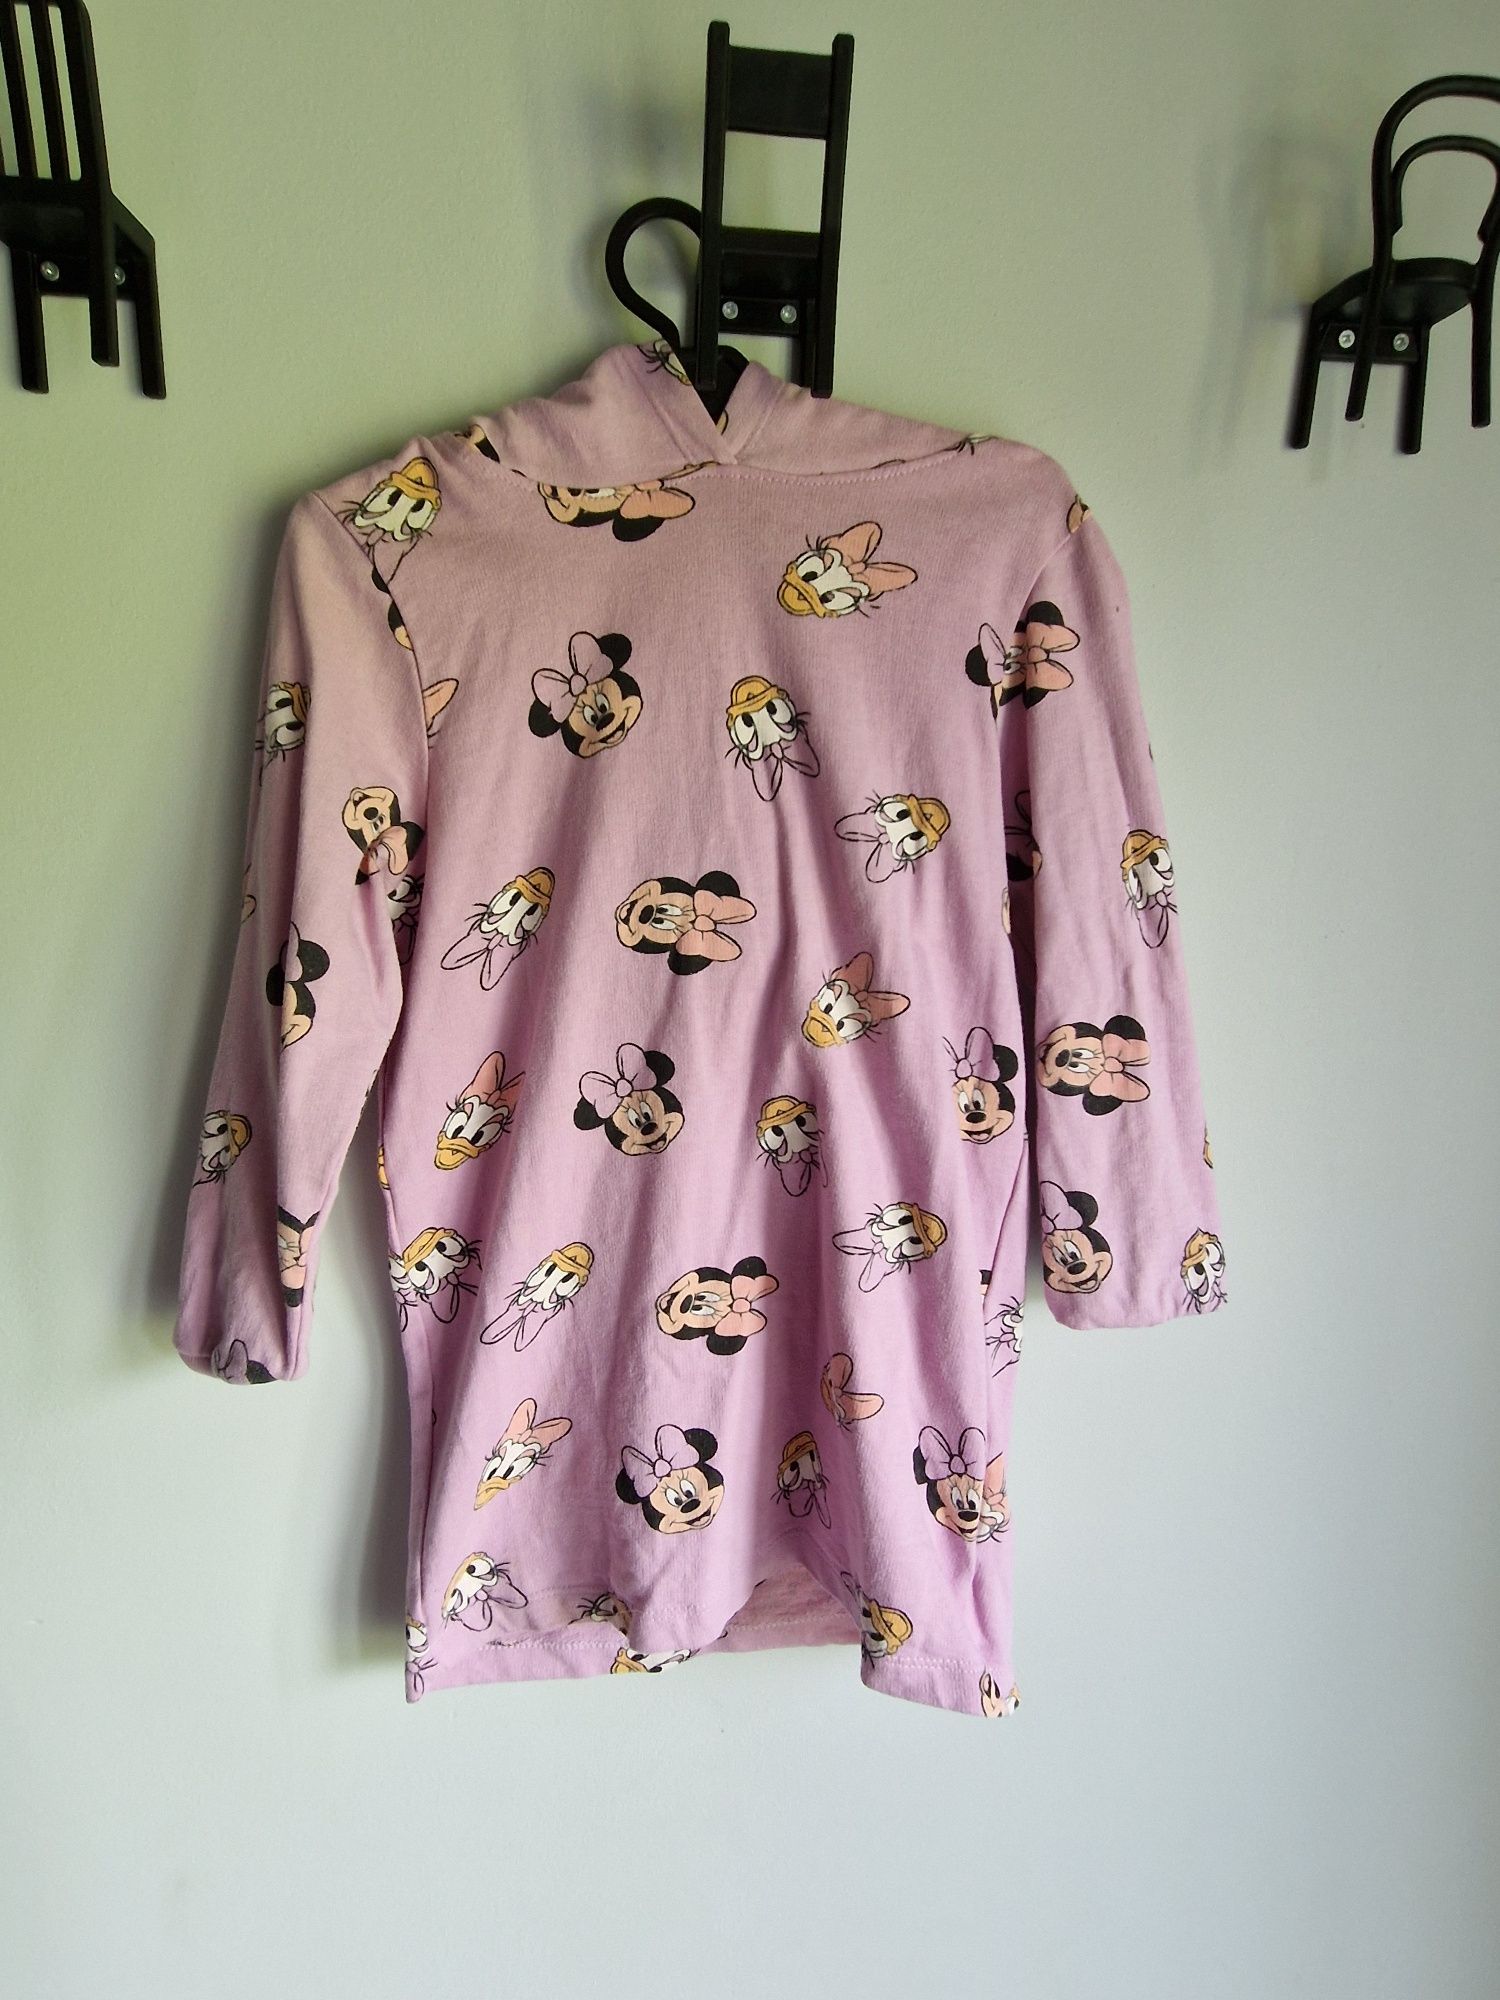 Bluzo sukienka fioletowa myszka minnie z kapturem